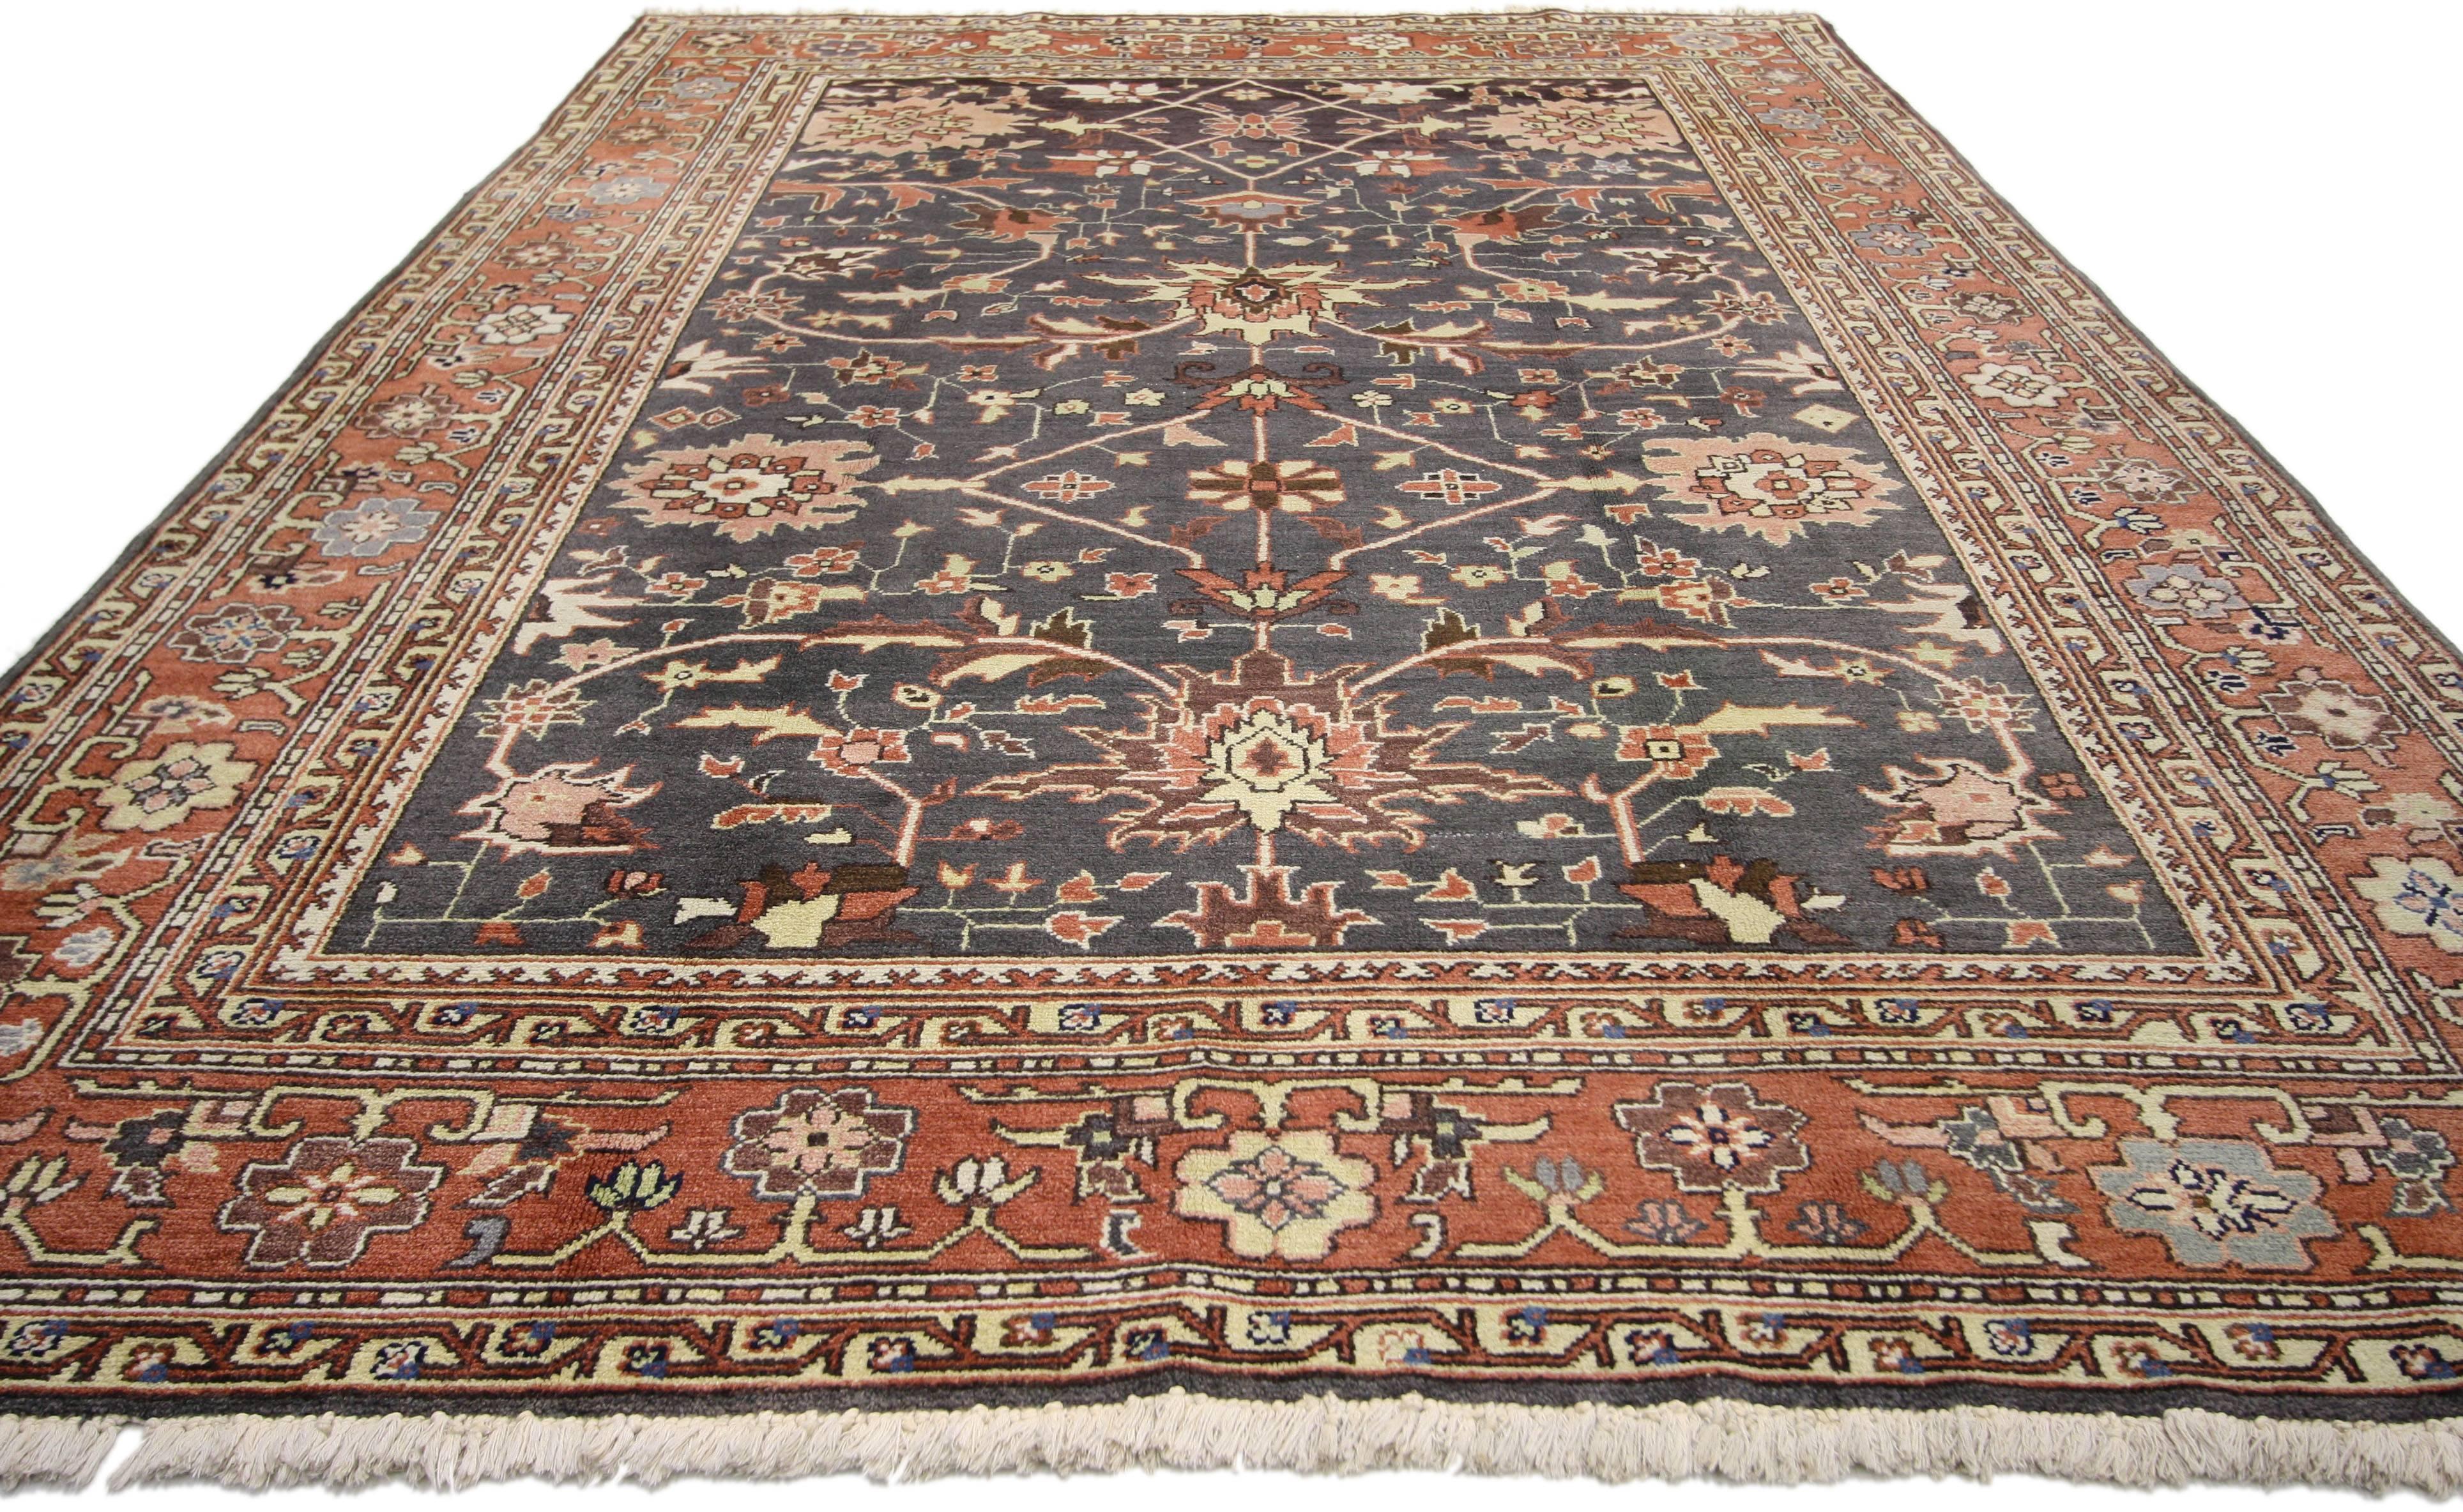 74642, Vintage-Teppich im persischen Stil mit traditionellem, modernem Design. Dieser handgeknüpfte Wollteppich im alten persischen Stil zeigt ein großformatiges traditionelles Herati-Muster. Die großflächigen, geradlinigen Motive bilden einen